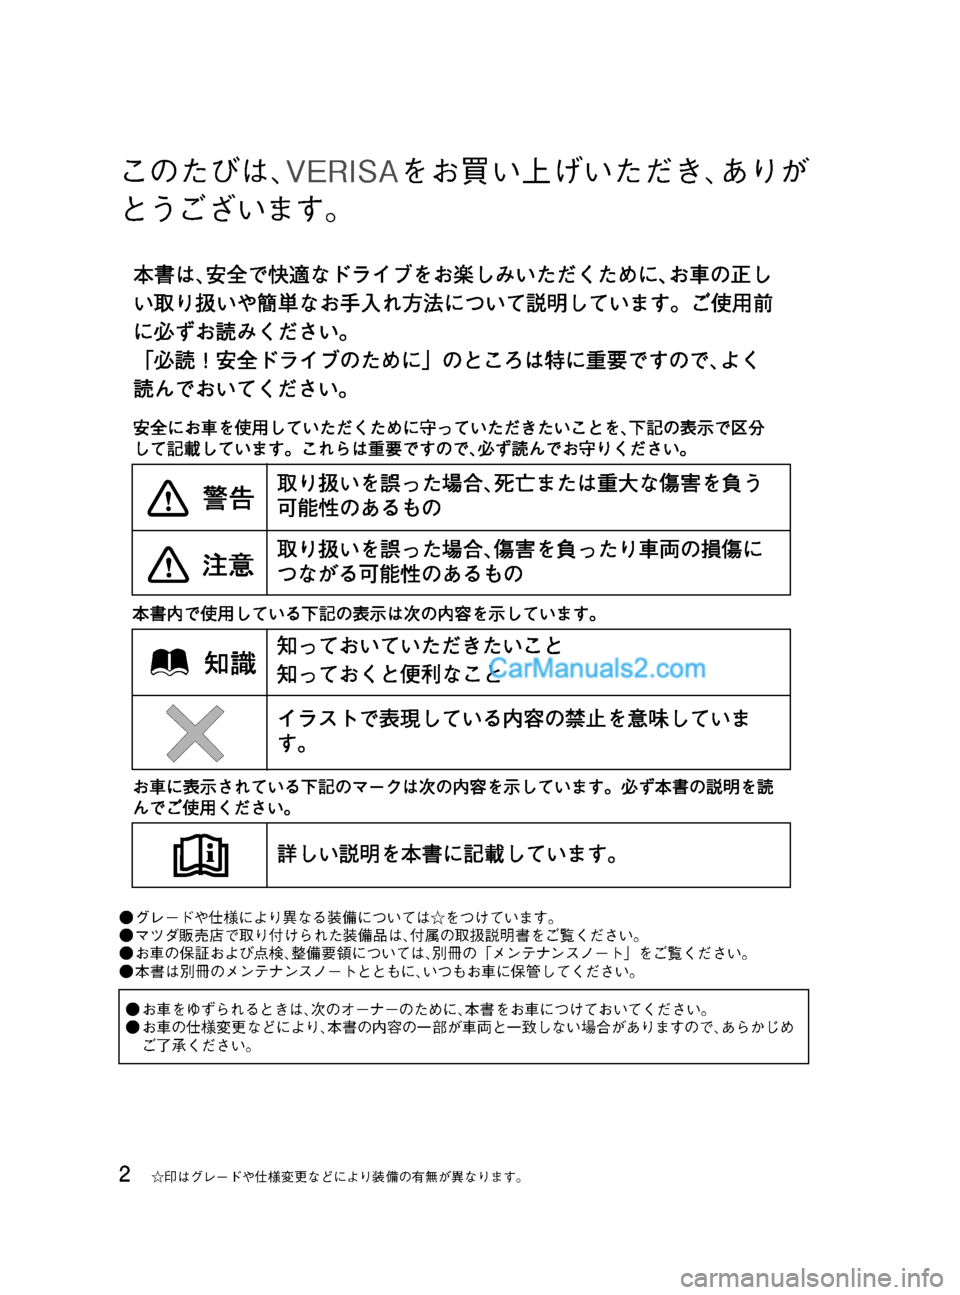 MAZDA MODEL VERISA 2007  ベリーサ｜取扱説明書 (in Japanese) Black plate (2,1)
このたびは､VERISAをお買い上げいただき､ありが
とうございます。
●グレードや仕様により異なる装備については☆をつけています。